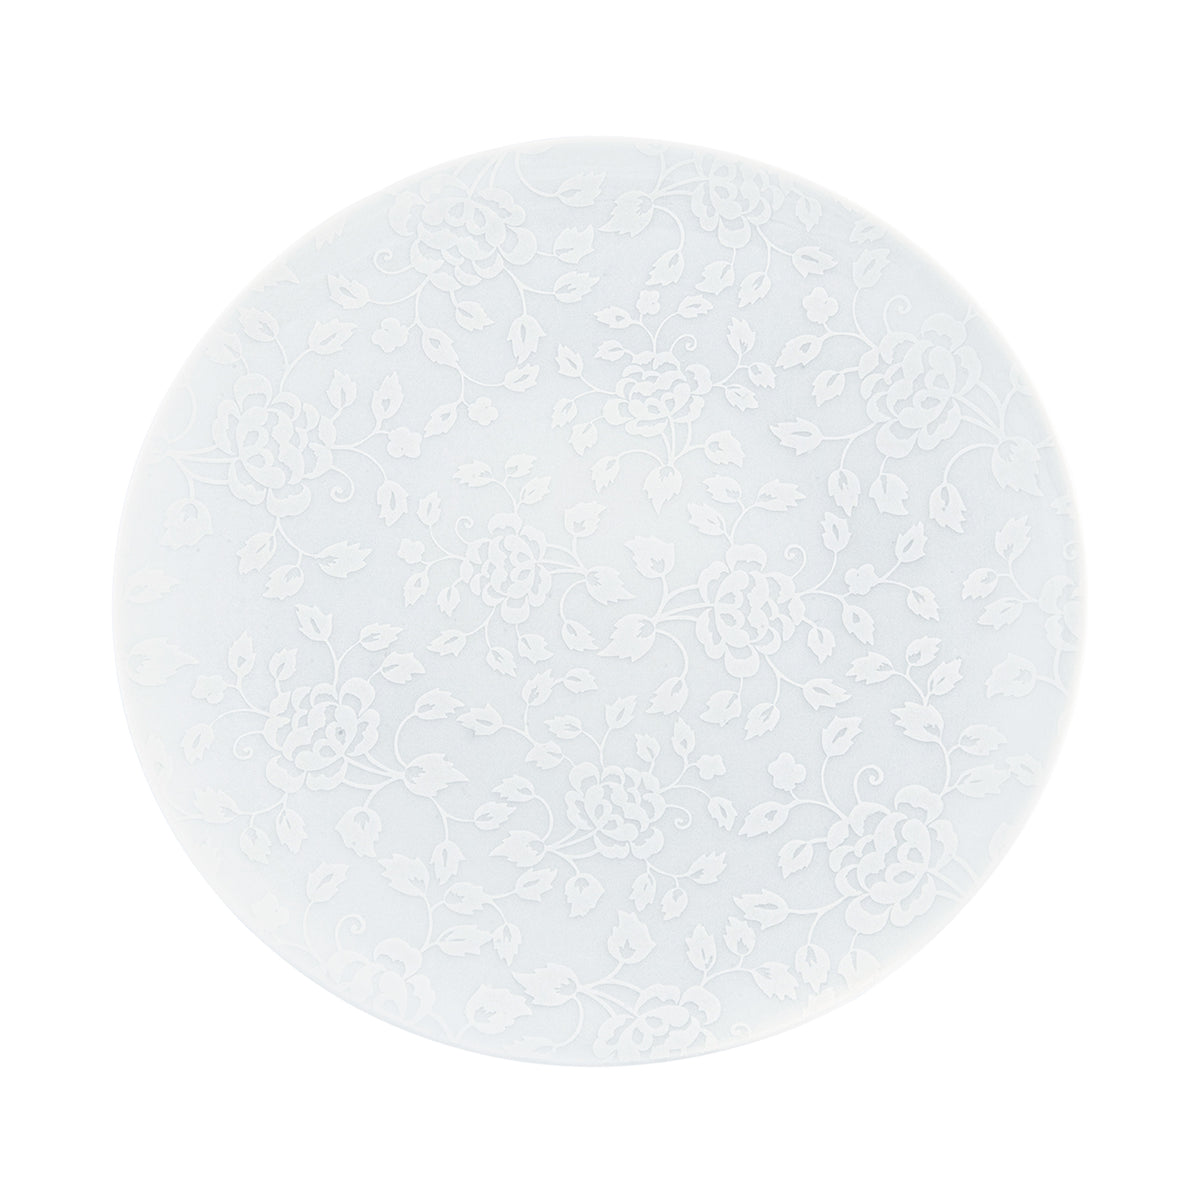 THISTLES white on white - 29 cm plate